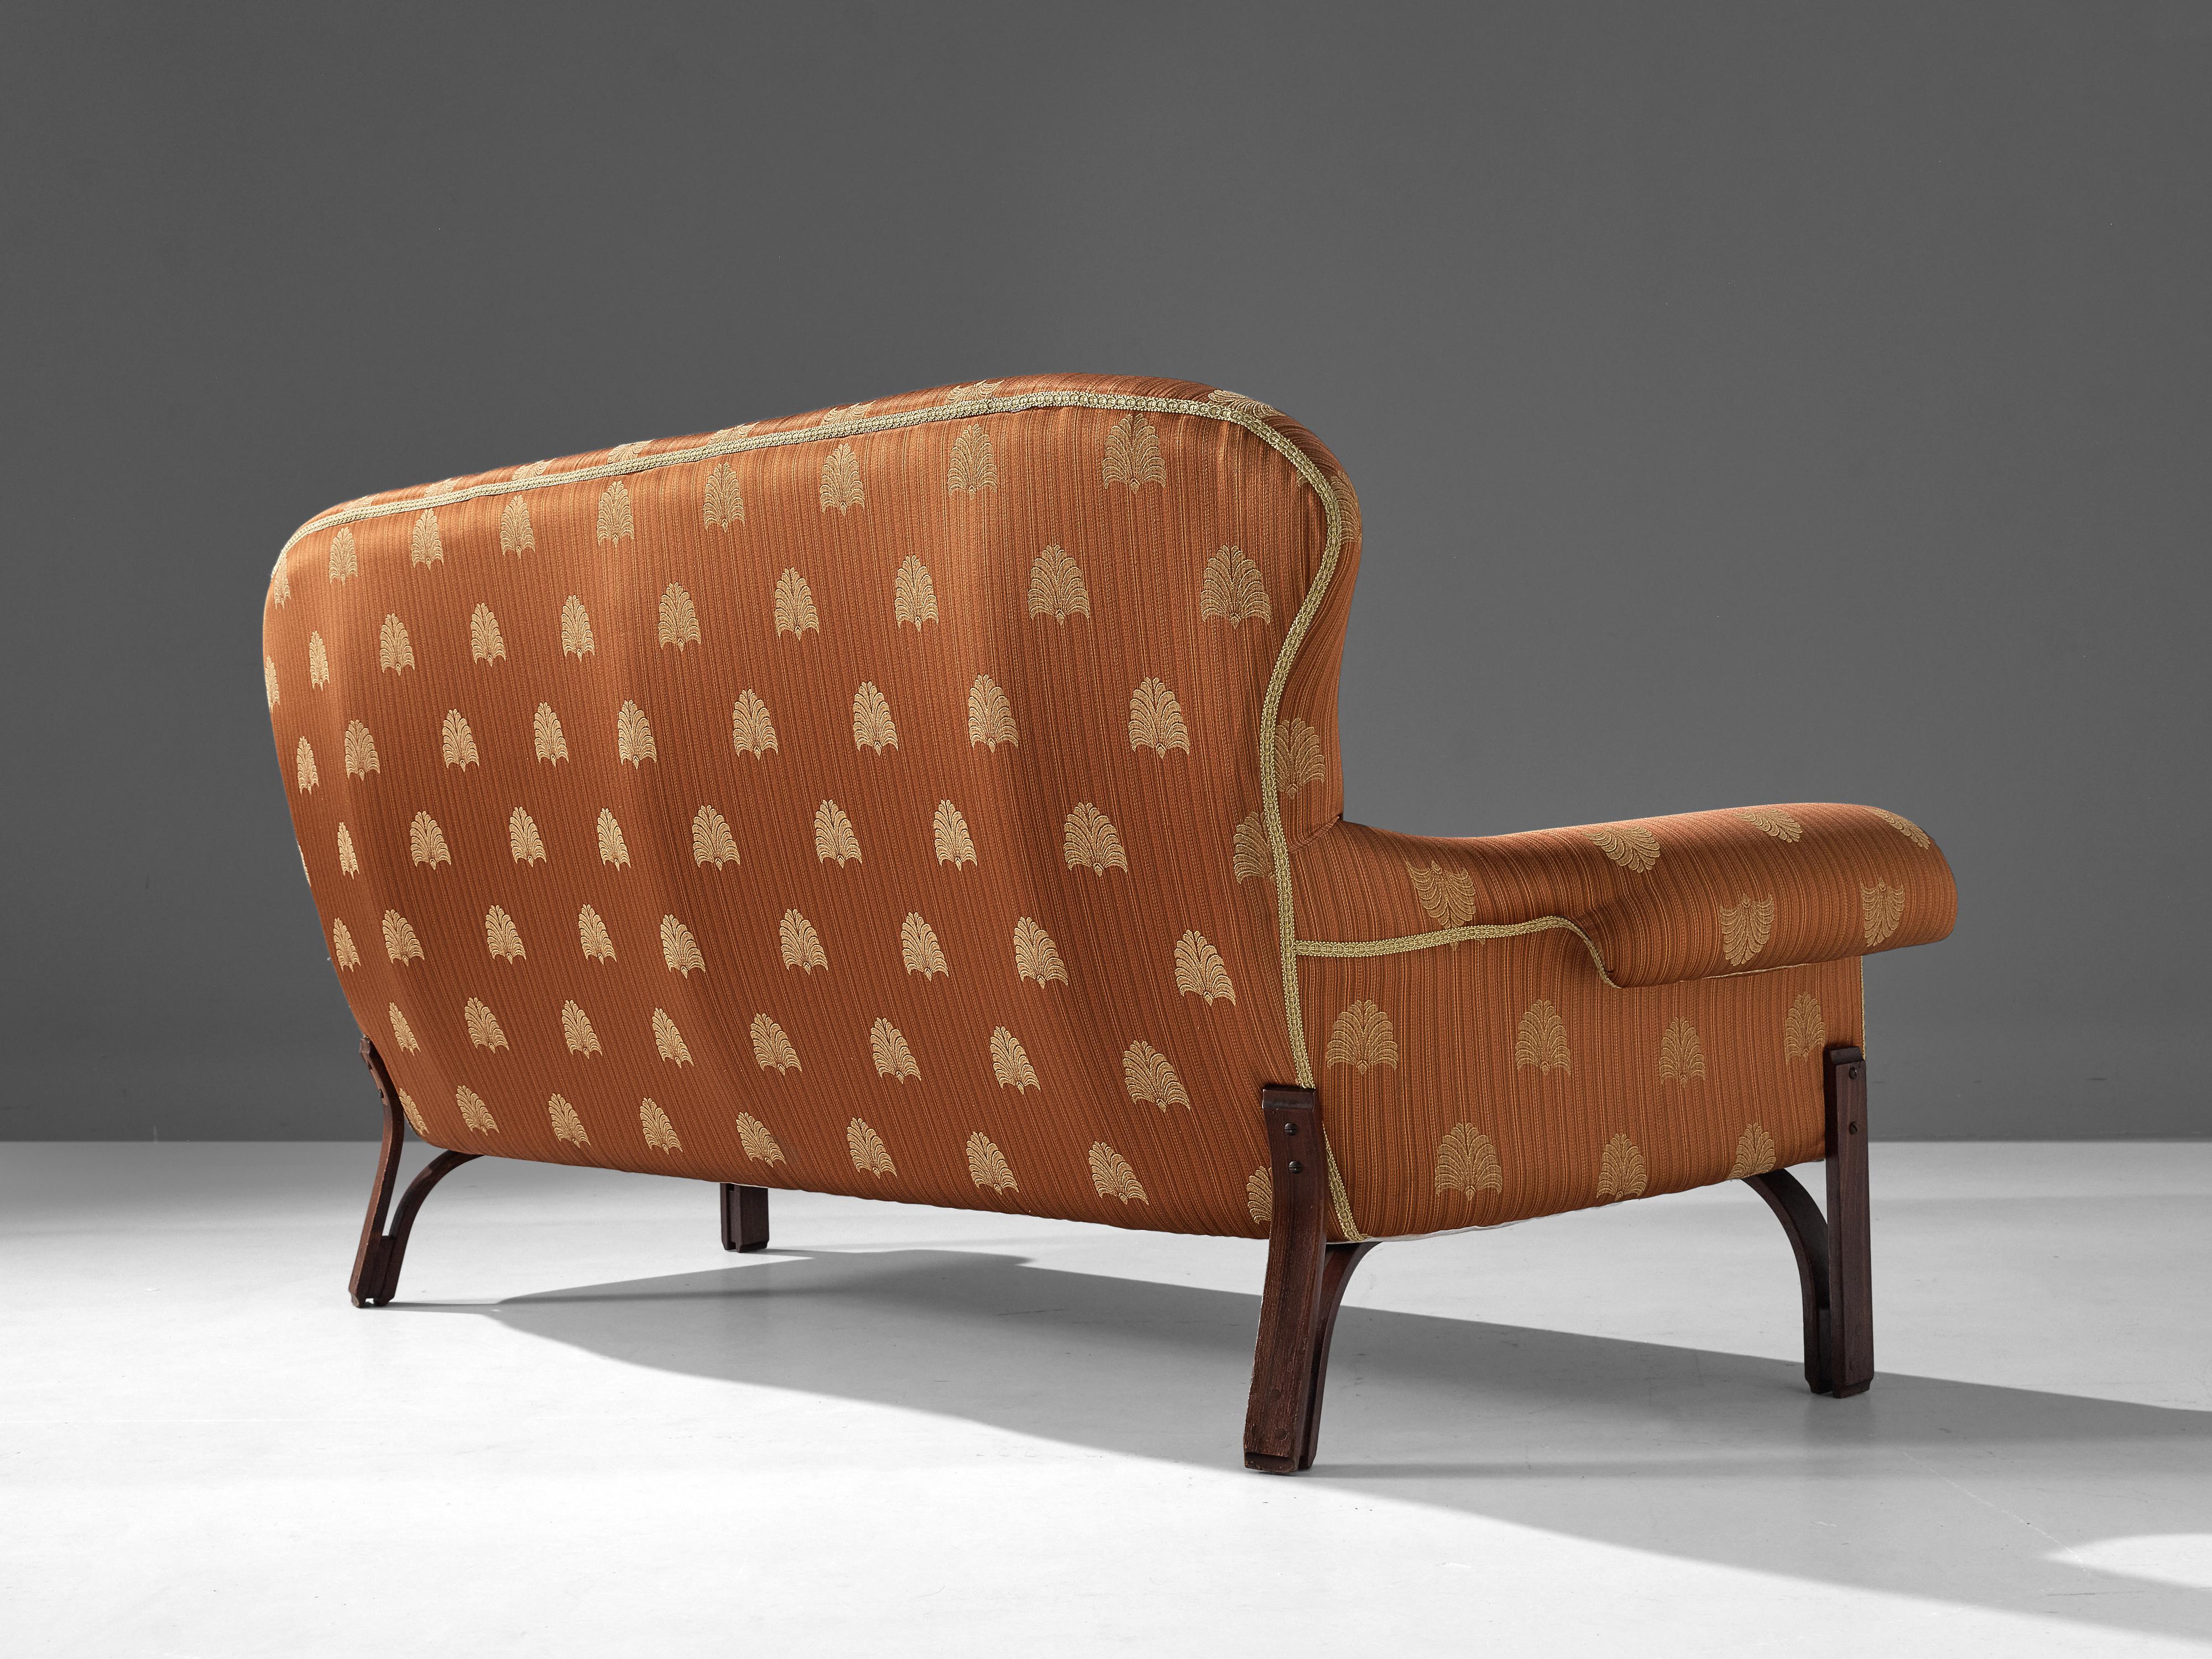 Italian Achilli, Brigidini & Canella 'Quadrifoglio' Sofa in Patterned Upholstery